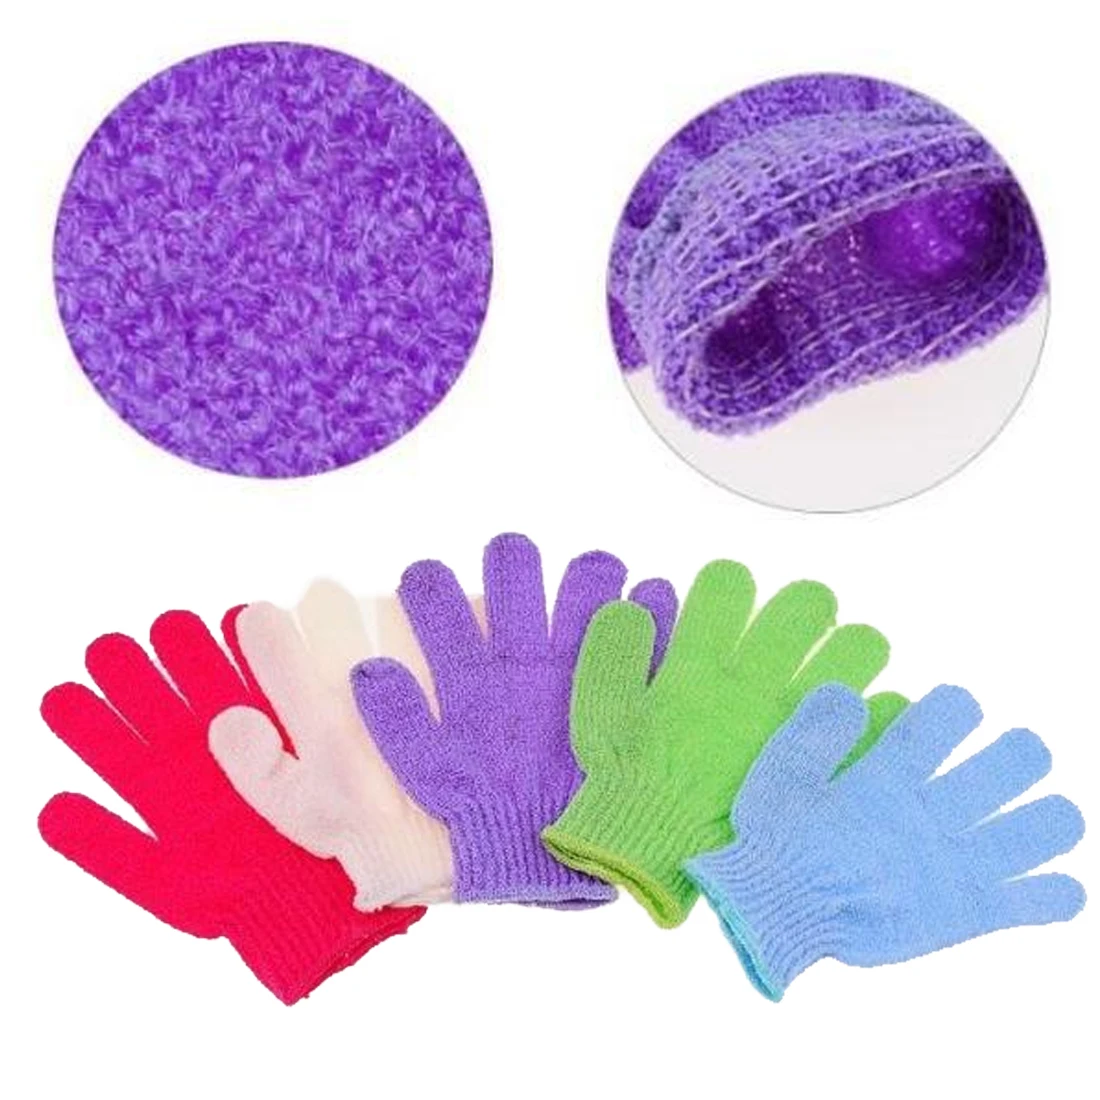 1 шт. перчатки для душа и ванной отшелушивающая моющая кожа спа массаж тела скруббер Очиститель для ванной перчатки